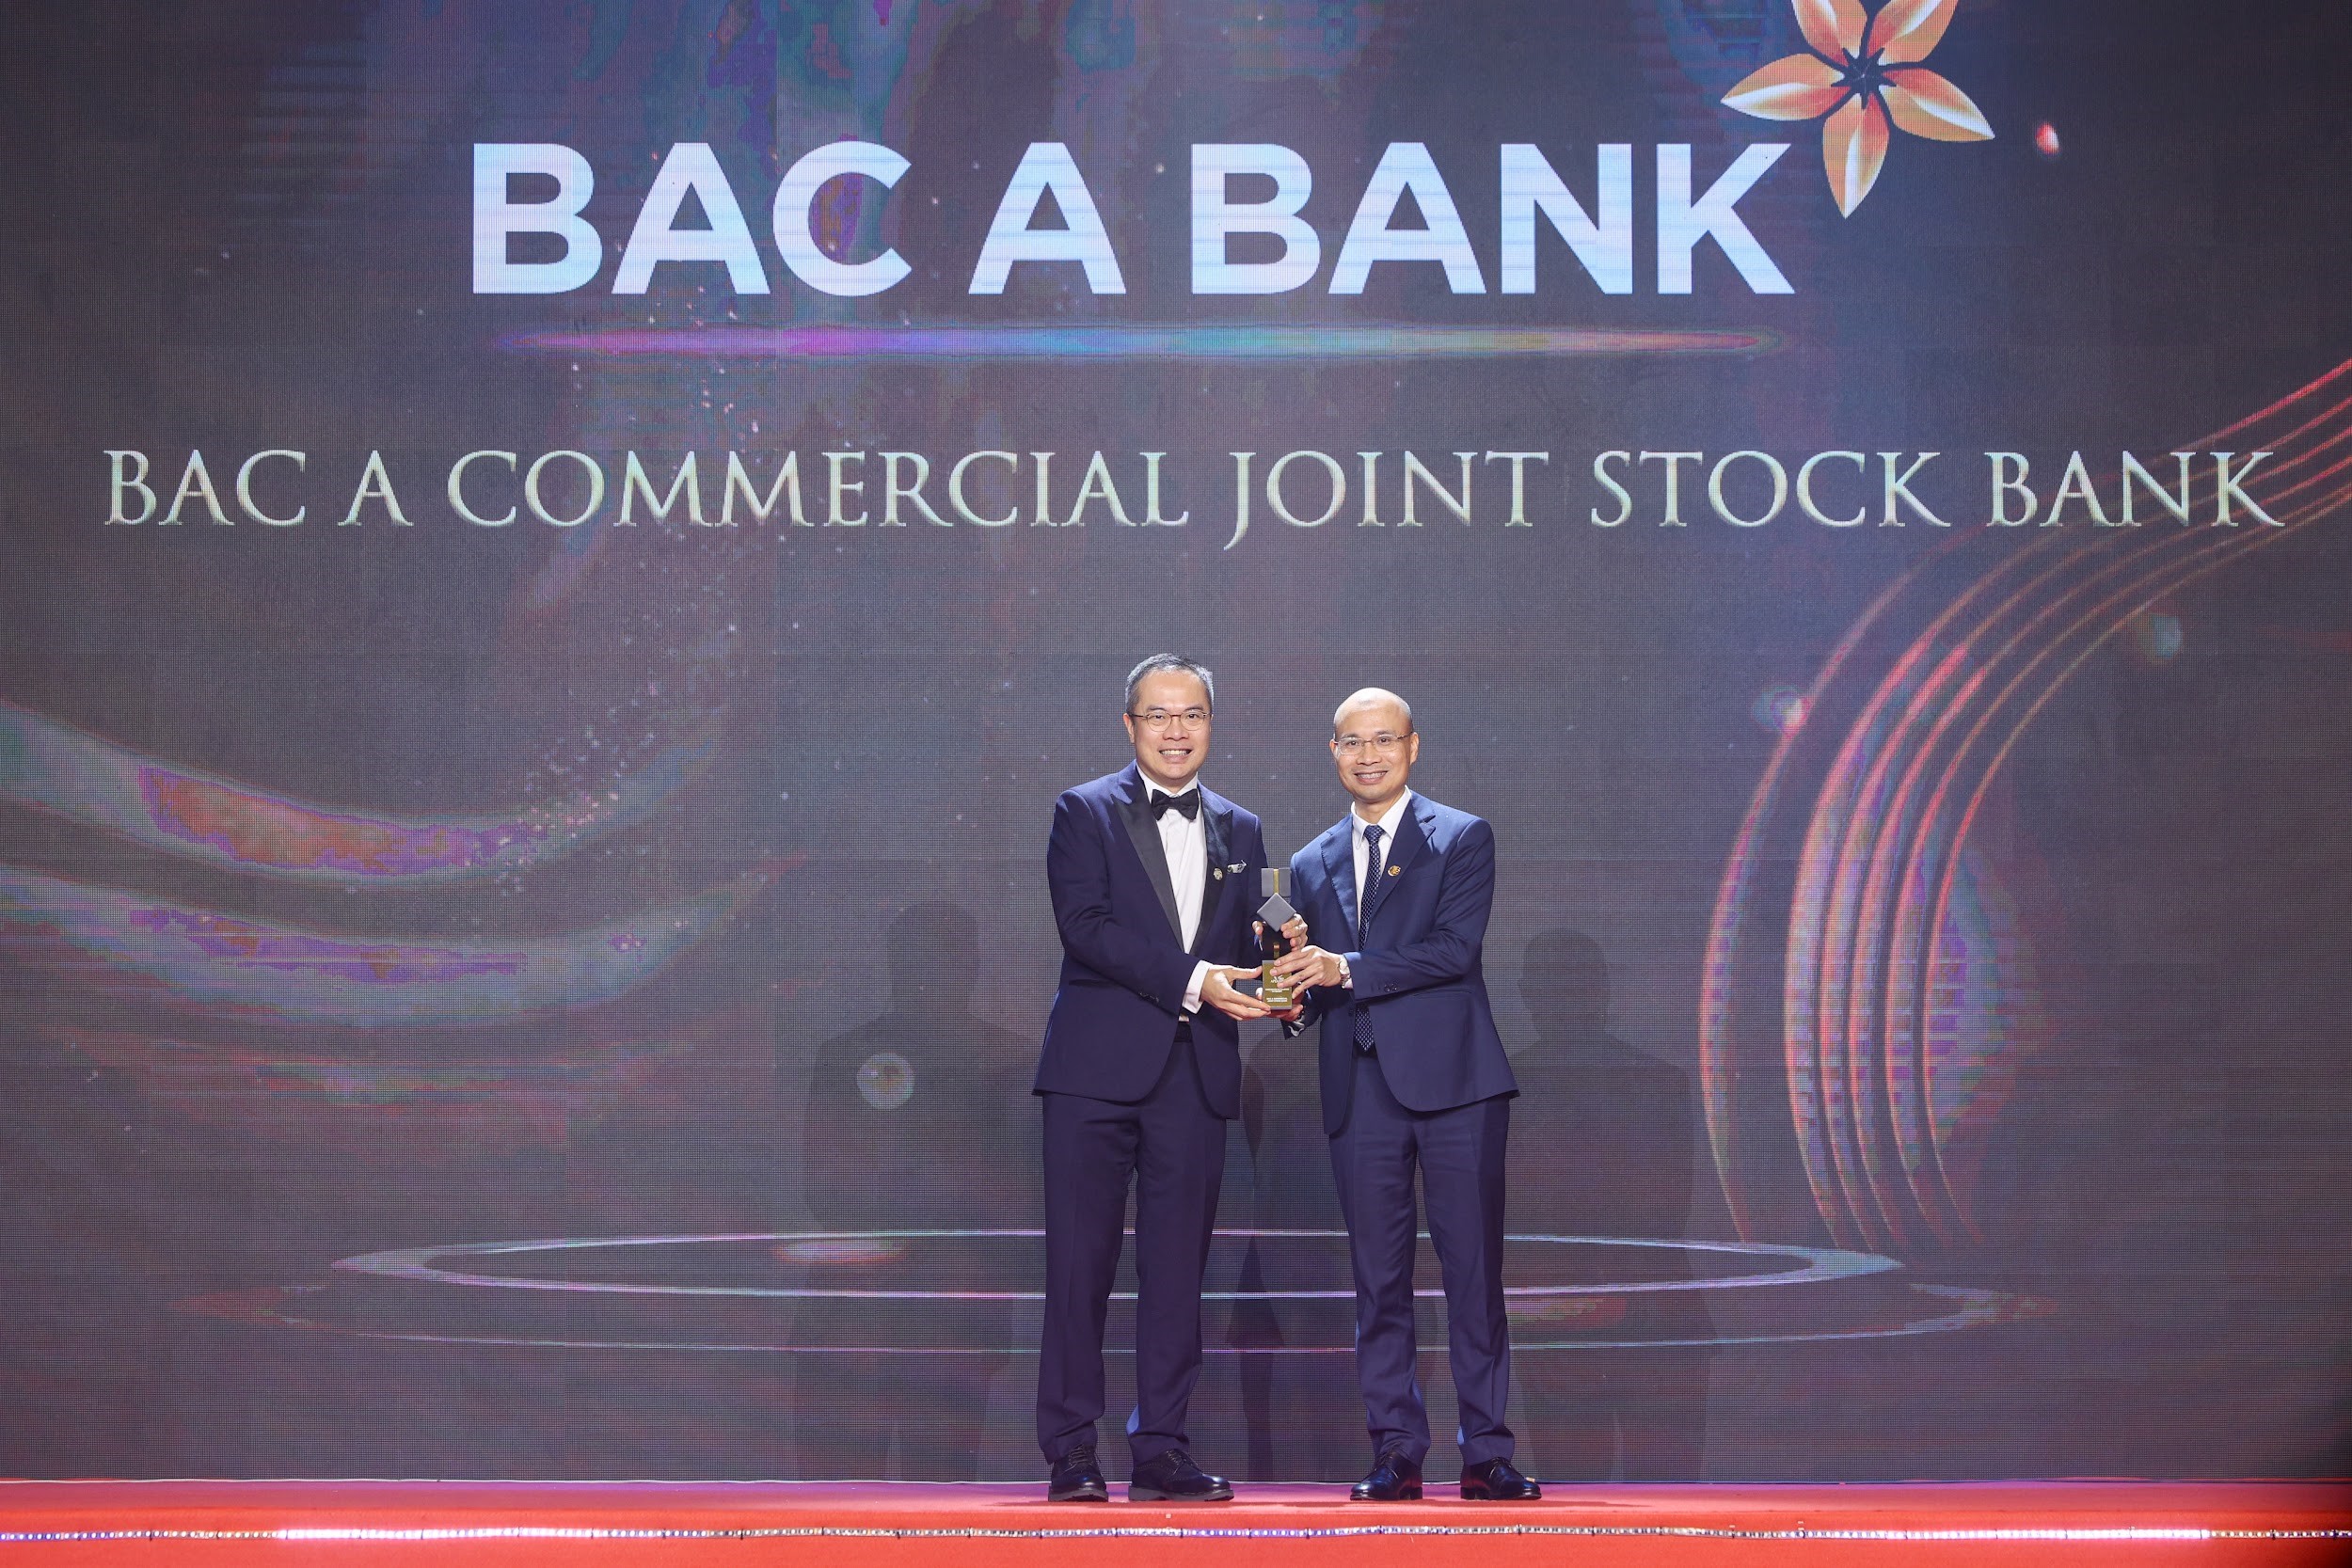 Kinh tế - Kinh doanh bền vững giúp BAC A BANK trở thành “Doanh nghiệp xuất sắc Châu Á” 